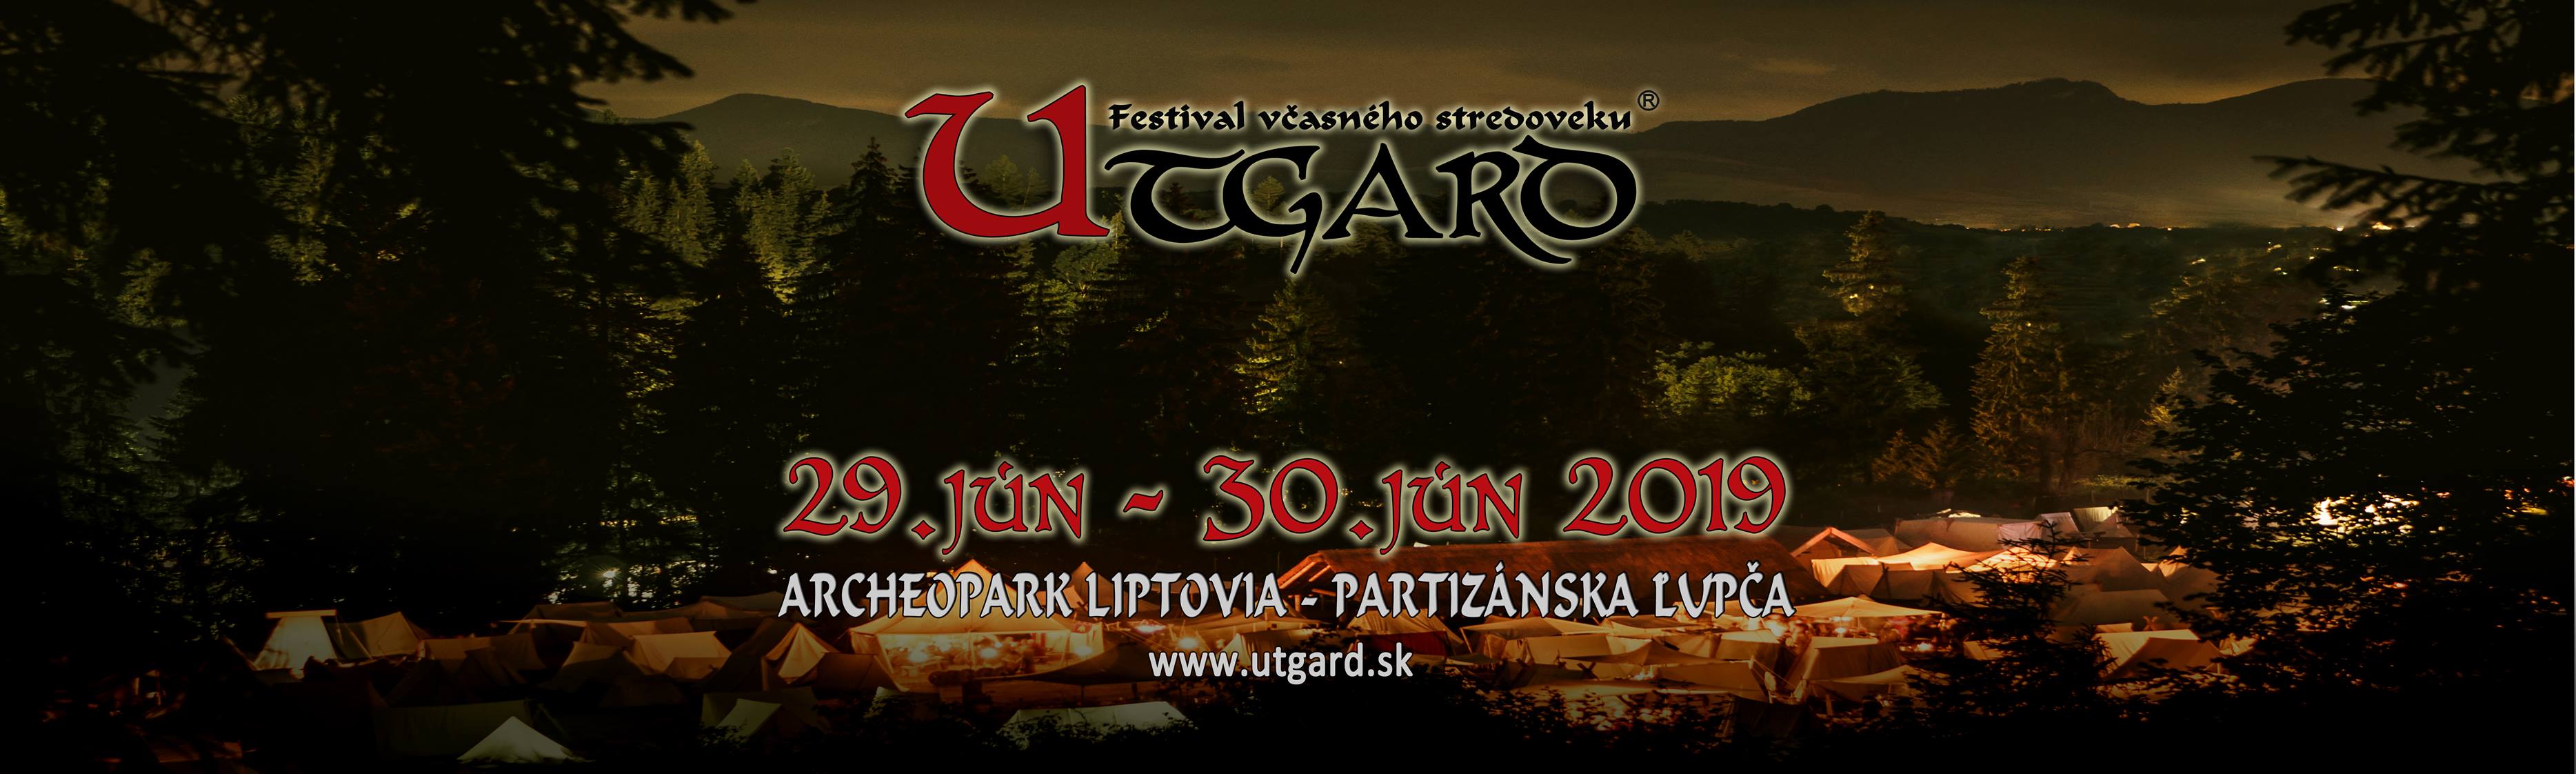 Utgard 2019 Partiznska Lupa - 5. ronk festivalu vasnho stredoveku